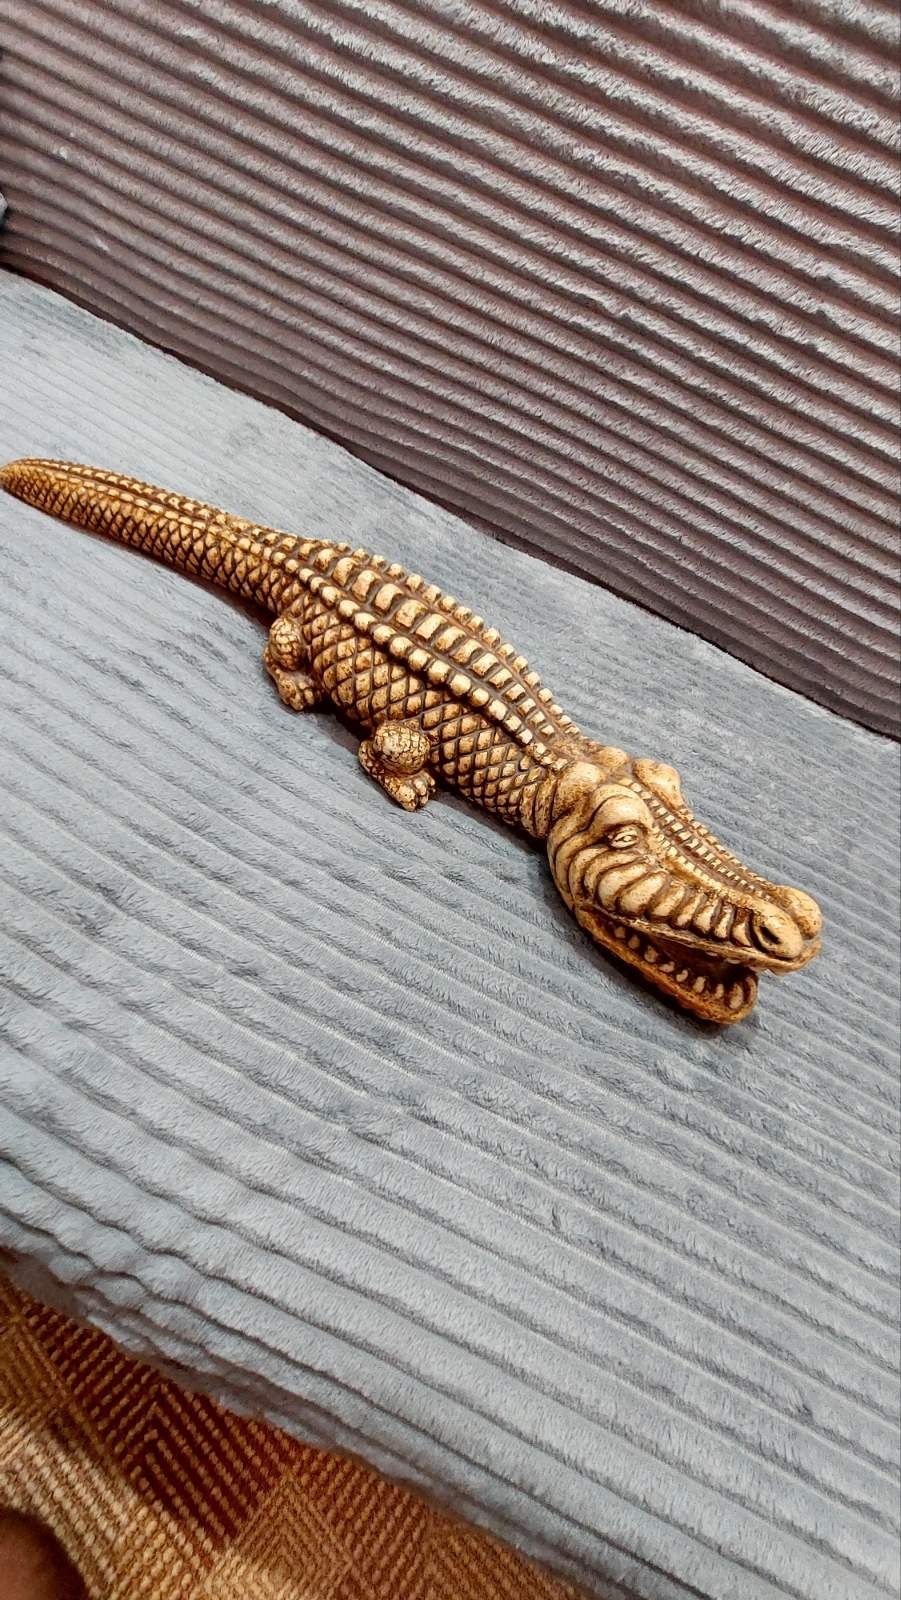 Гипсовая фигурка крокодил